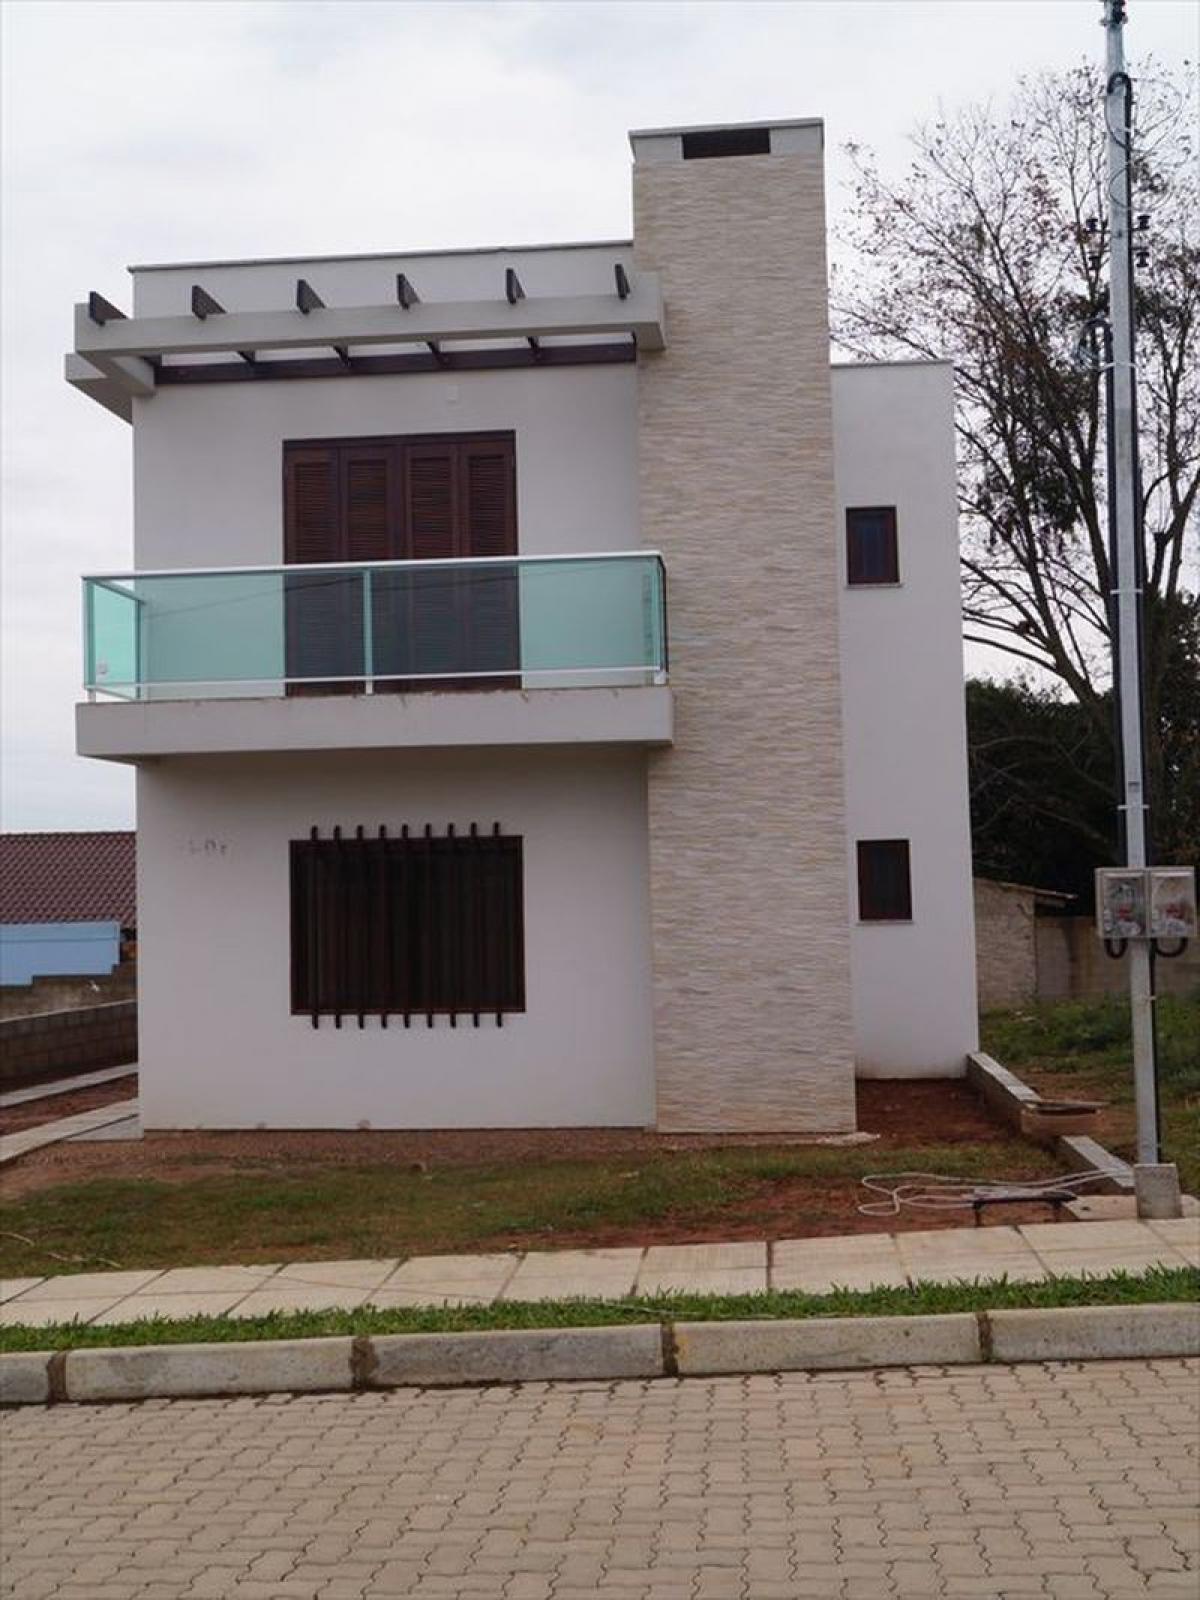 Picture of Townhome For Sale in Rio Grande Do Sul, Rio Grande do Sul, Brazil